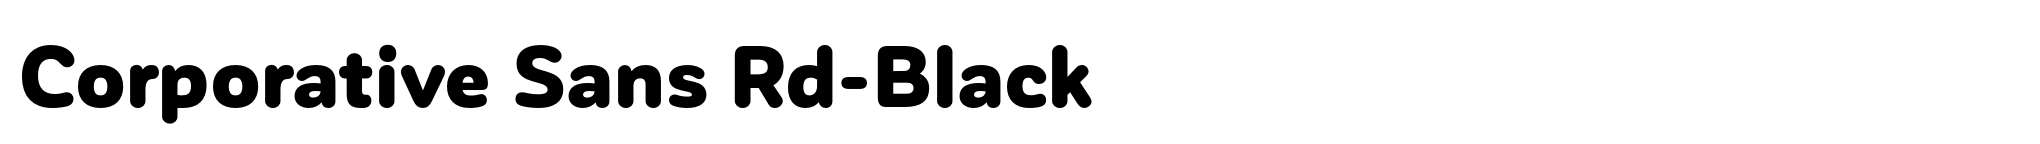 Corporative Sans Rd-Black image